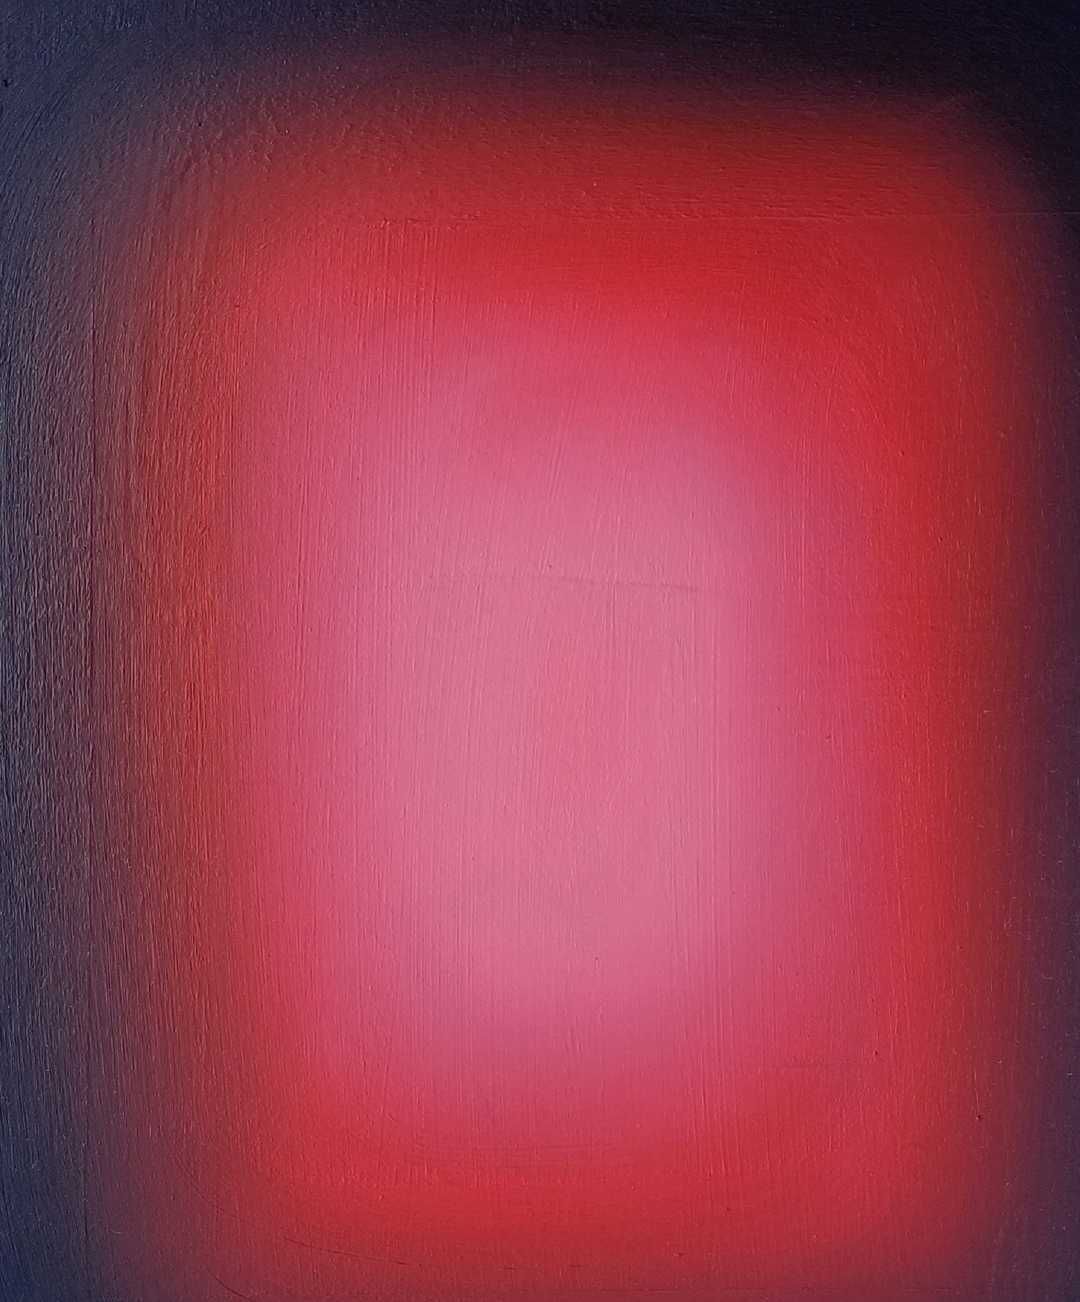 Obraz op art sfumato gradient czerwony różowy czarny 40cm x 30cm